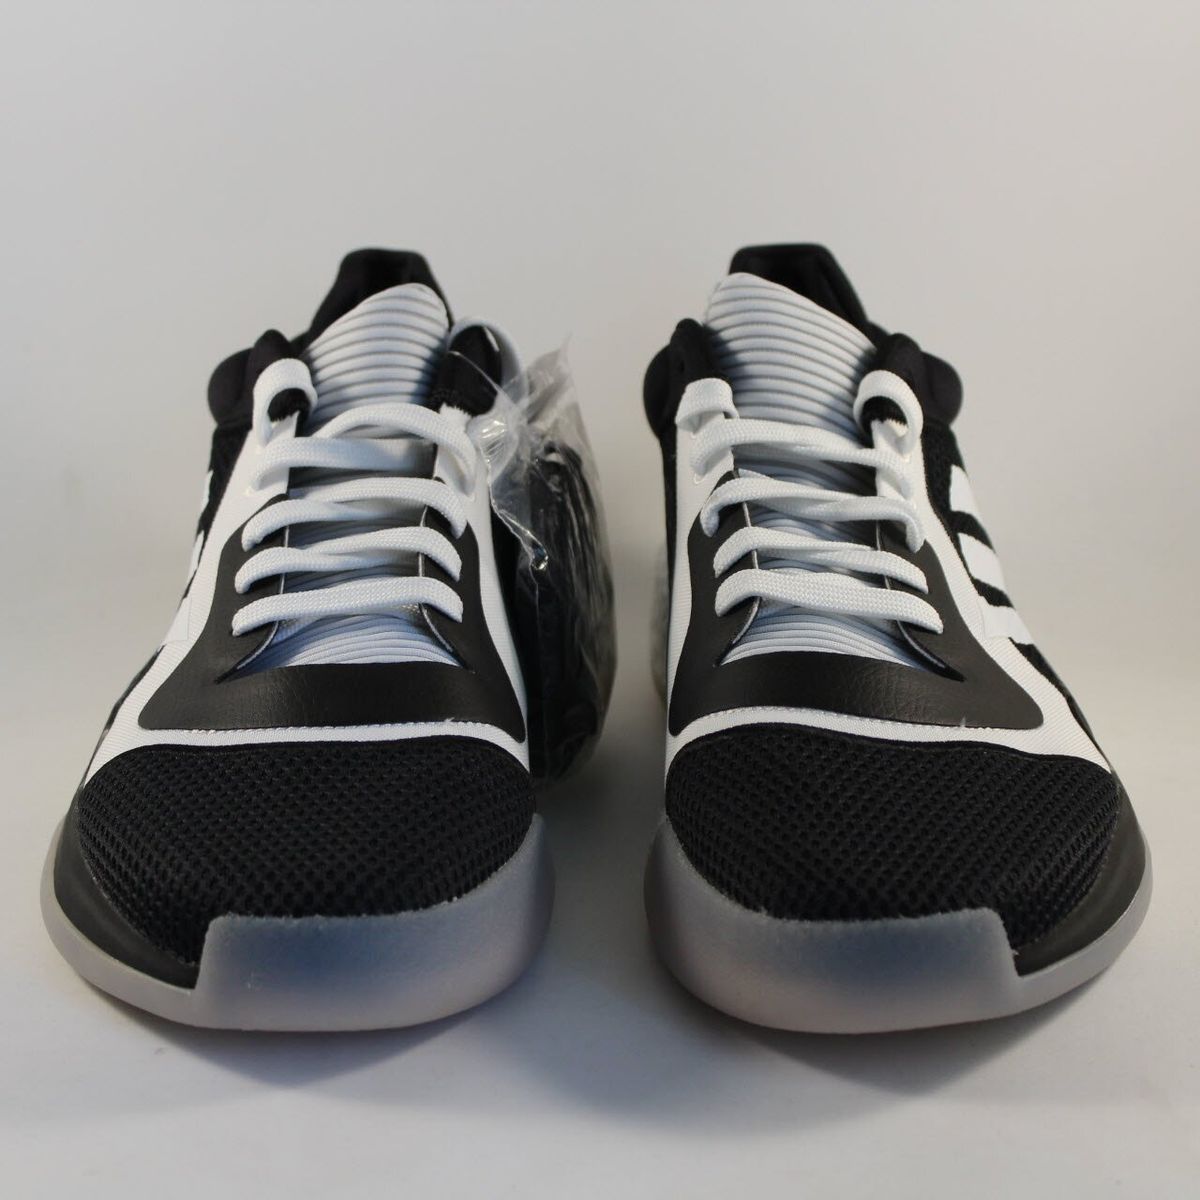 Баскетбольные кроссовки Adidas Marquee Boost Low (G26735), 13.5